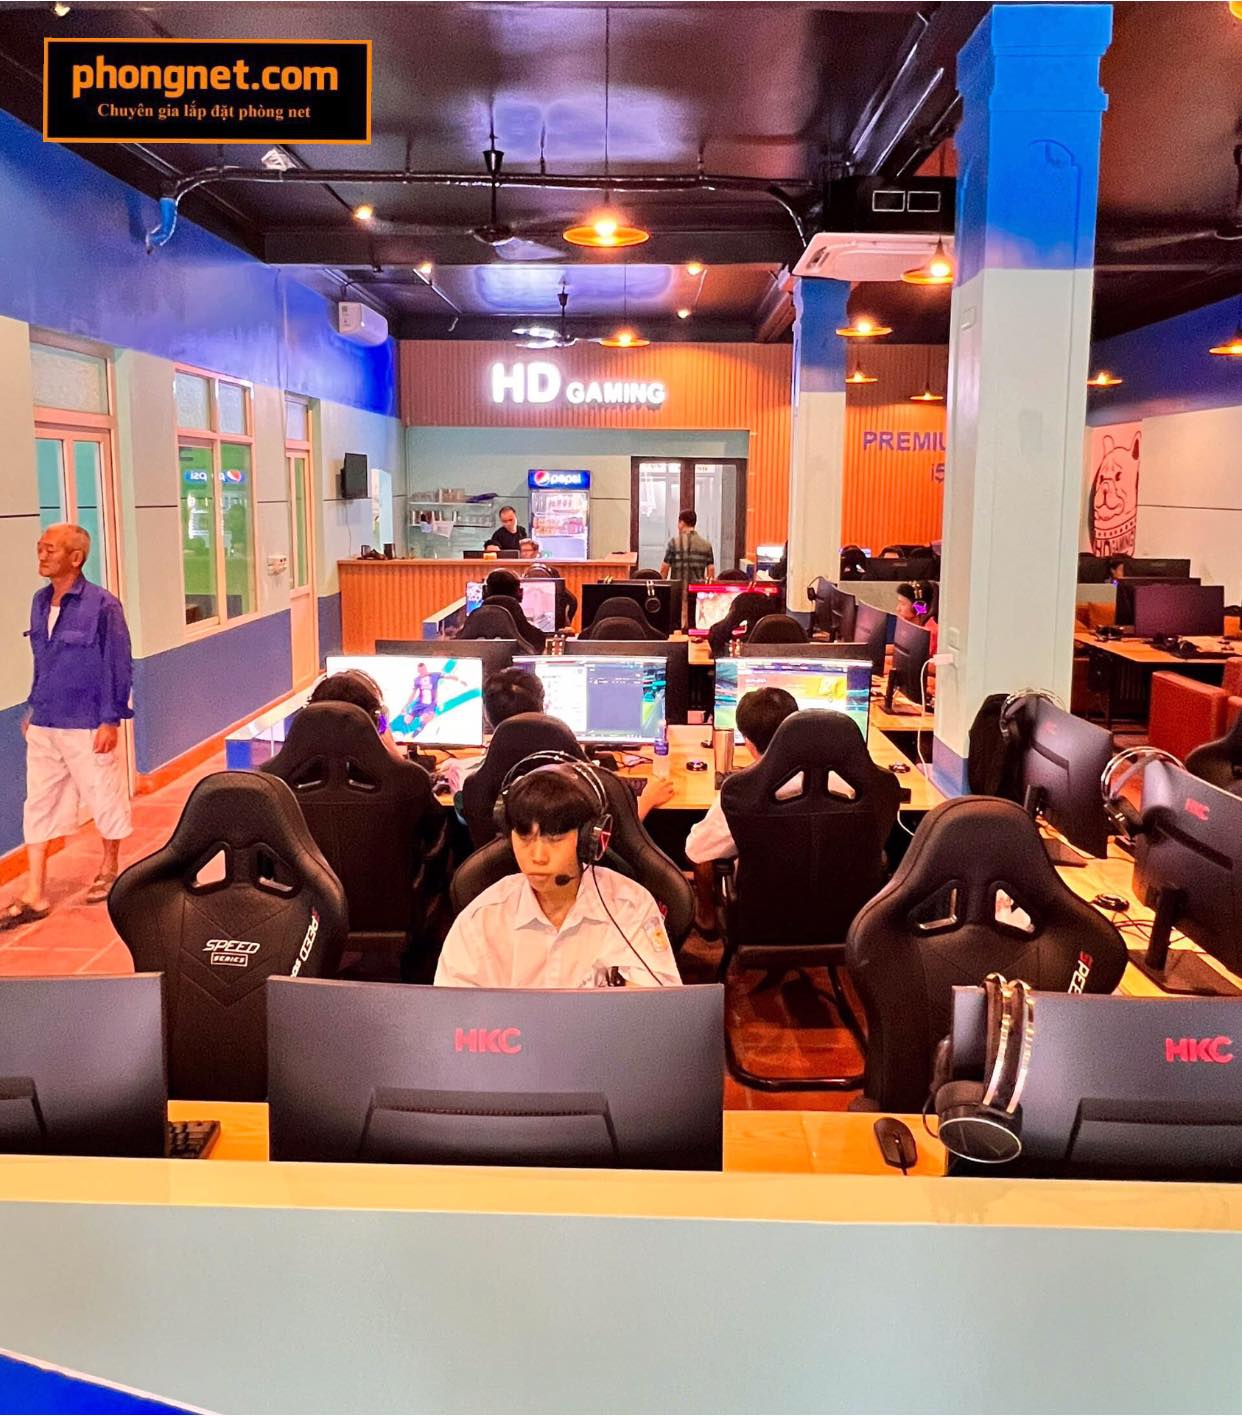 Dự án lắp đặt phòng net HD Gaming tại Cẩm Phả, Quảng Ninh 2